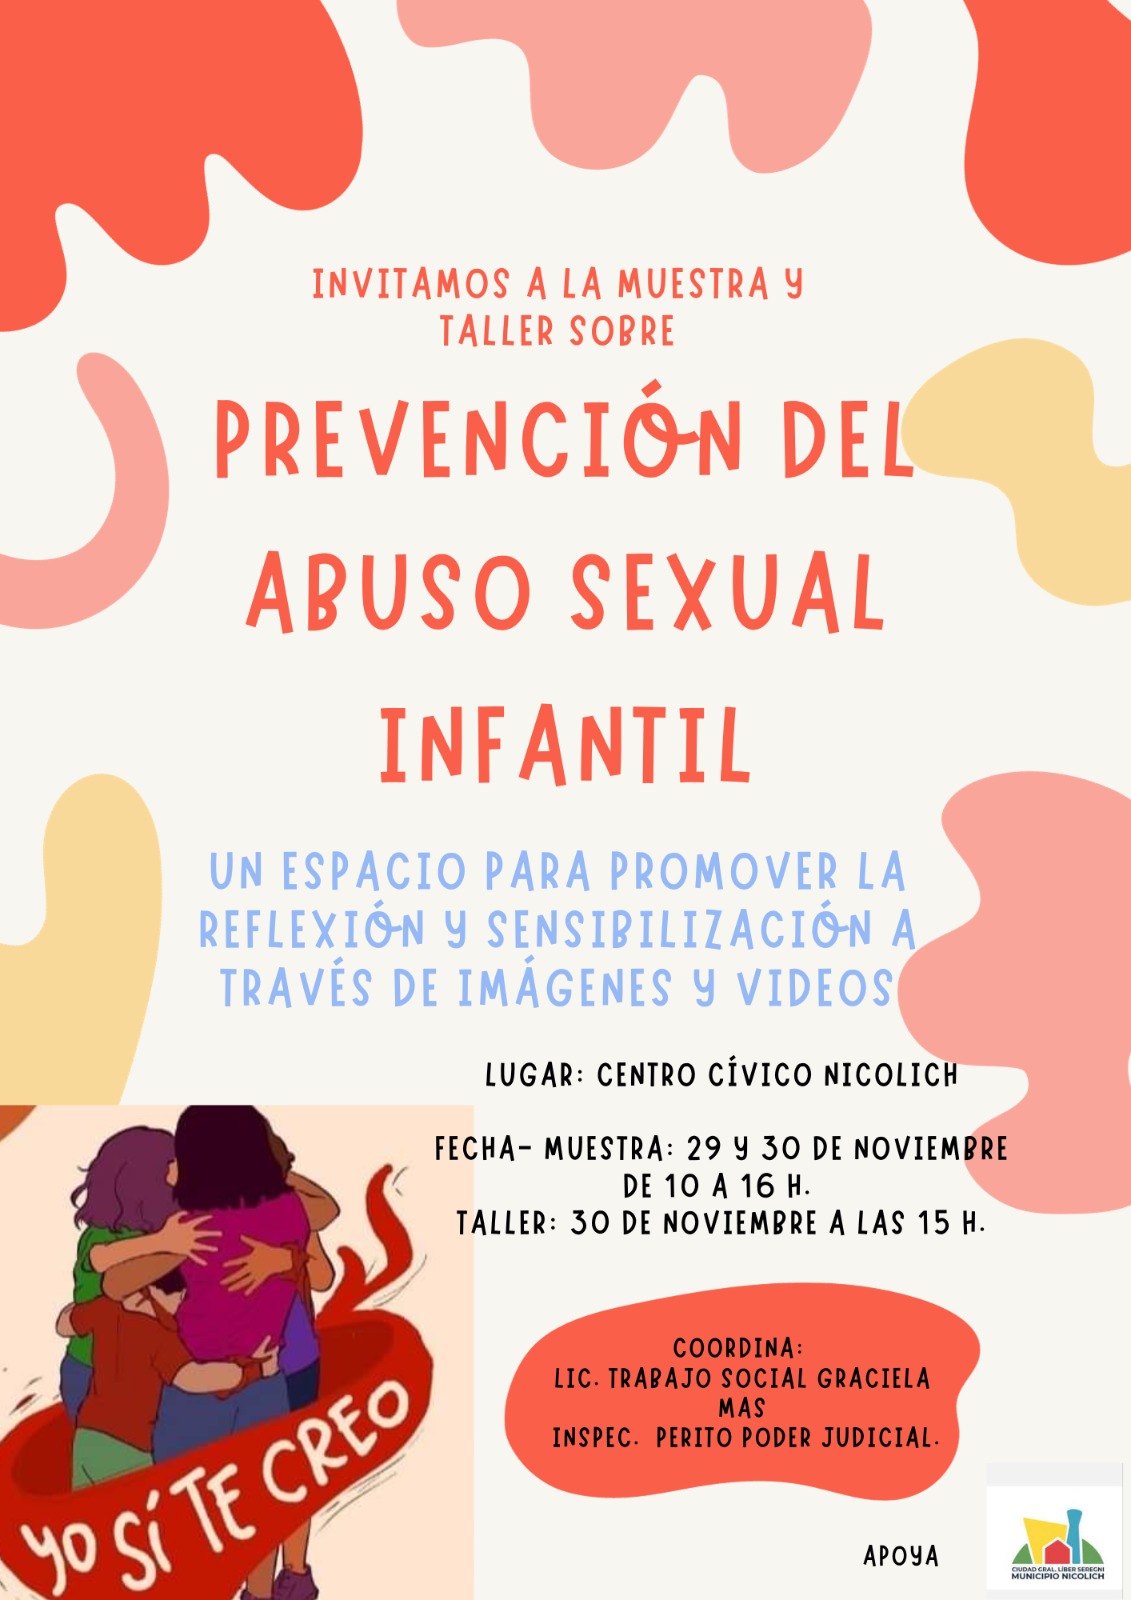 MUESTRA Y TALLER SOBRE PREVENCIÓN DEL ABUSO SEXUAL INFANTIL.